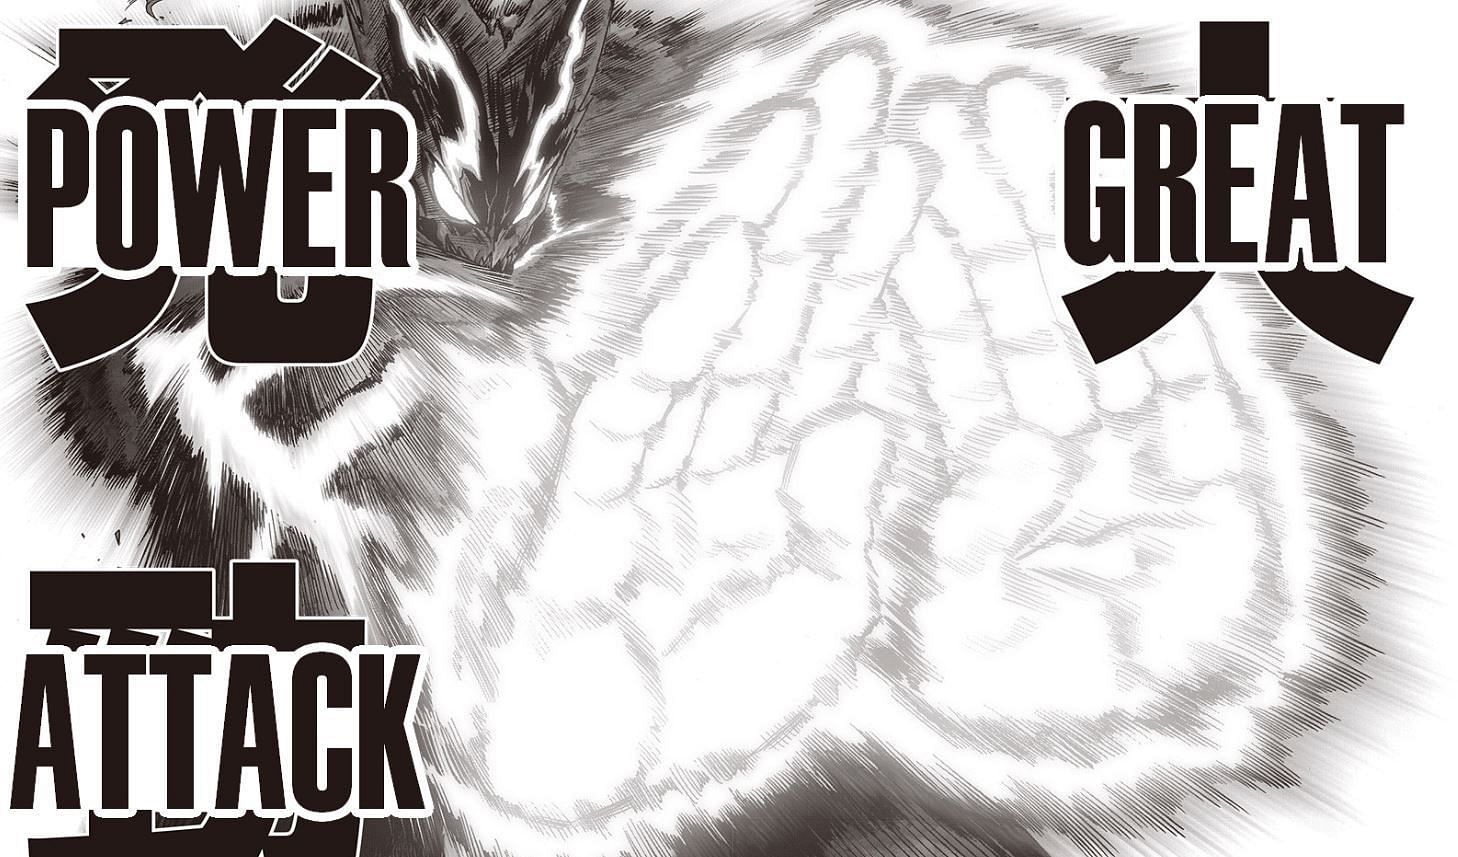 Garou&#039;s Great Power Attack (Image via VIZ Media)